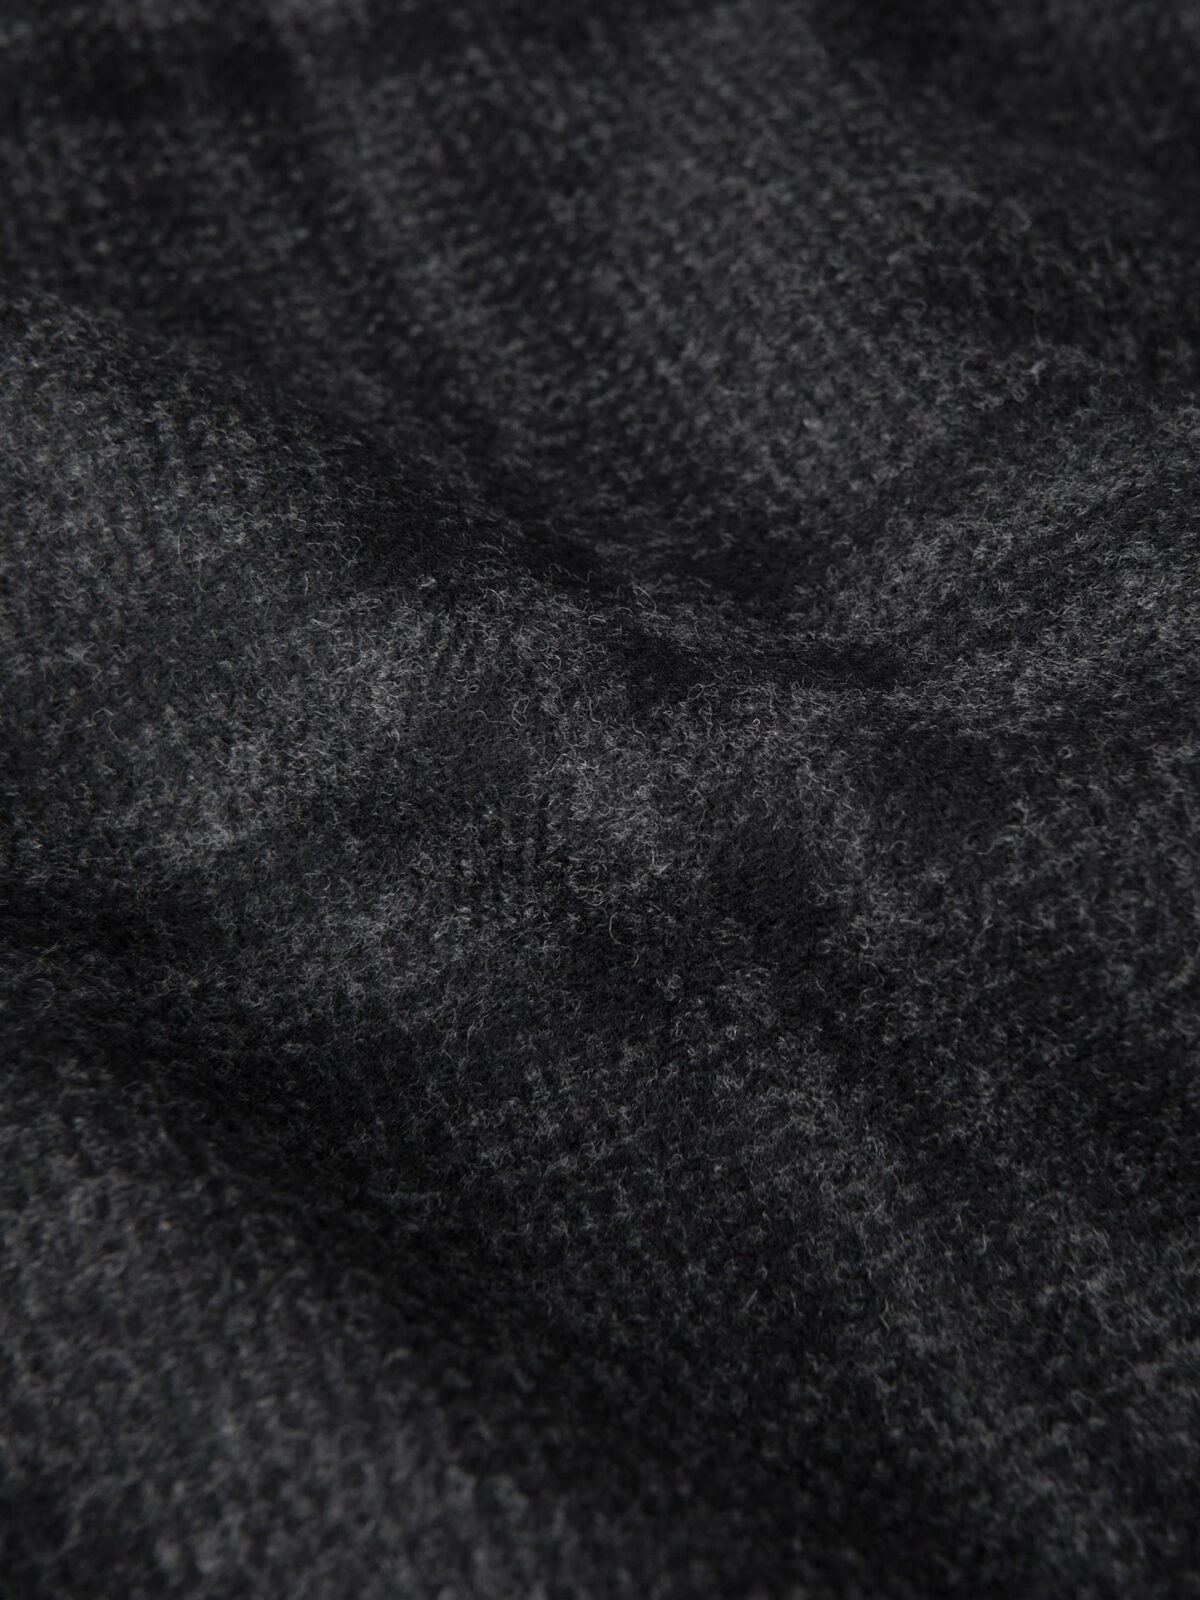 Lazio Charcoal Plaid Wool Coat